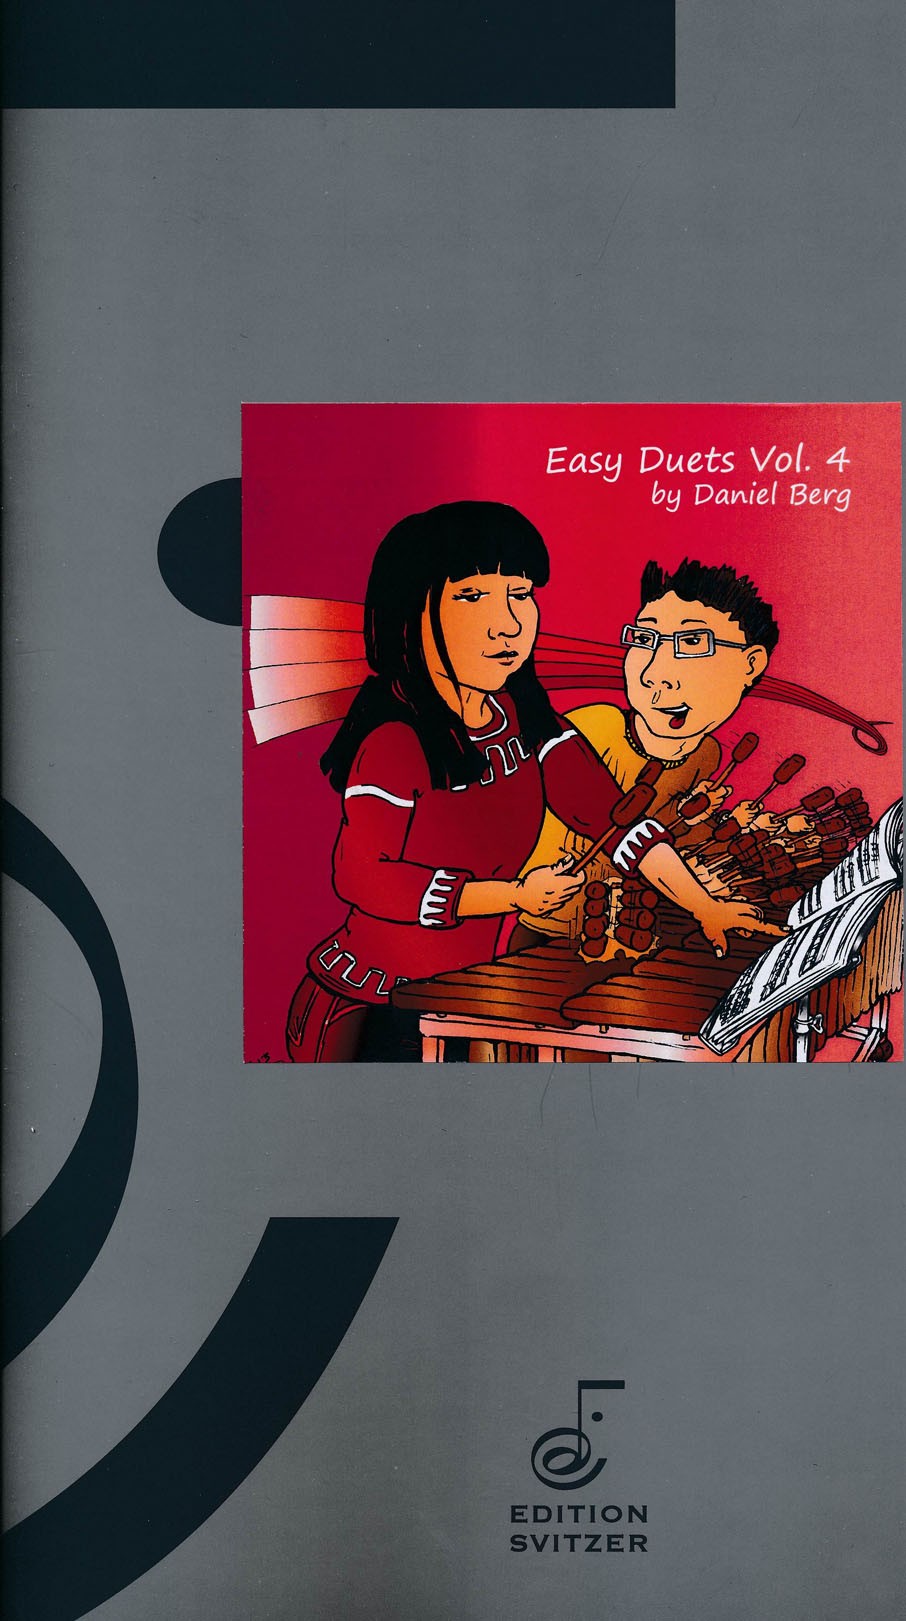 Easy Duets Volume 4 by Daniel Berg